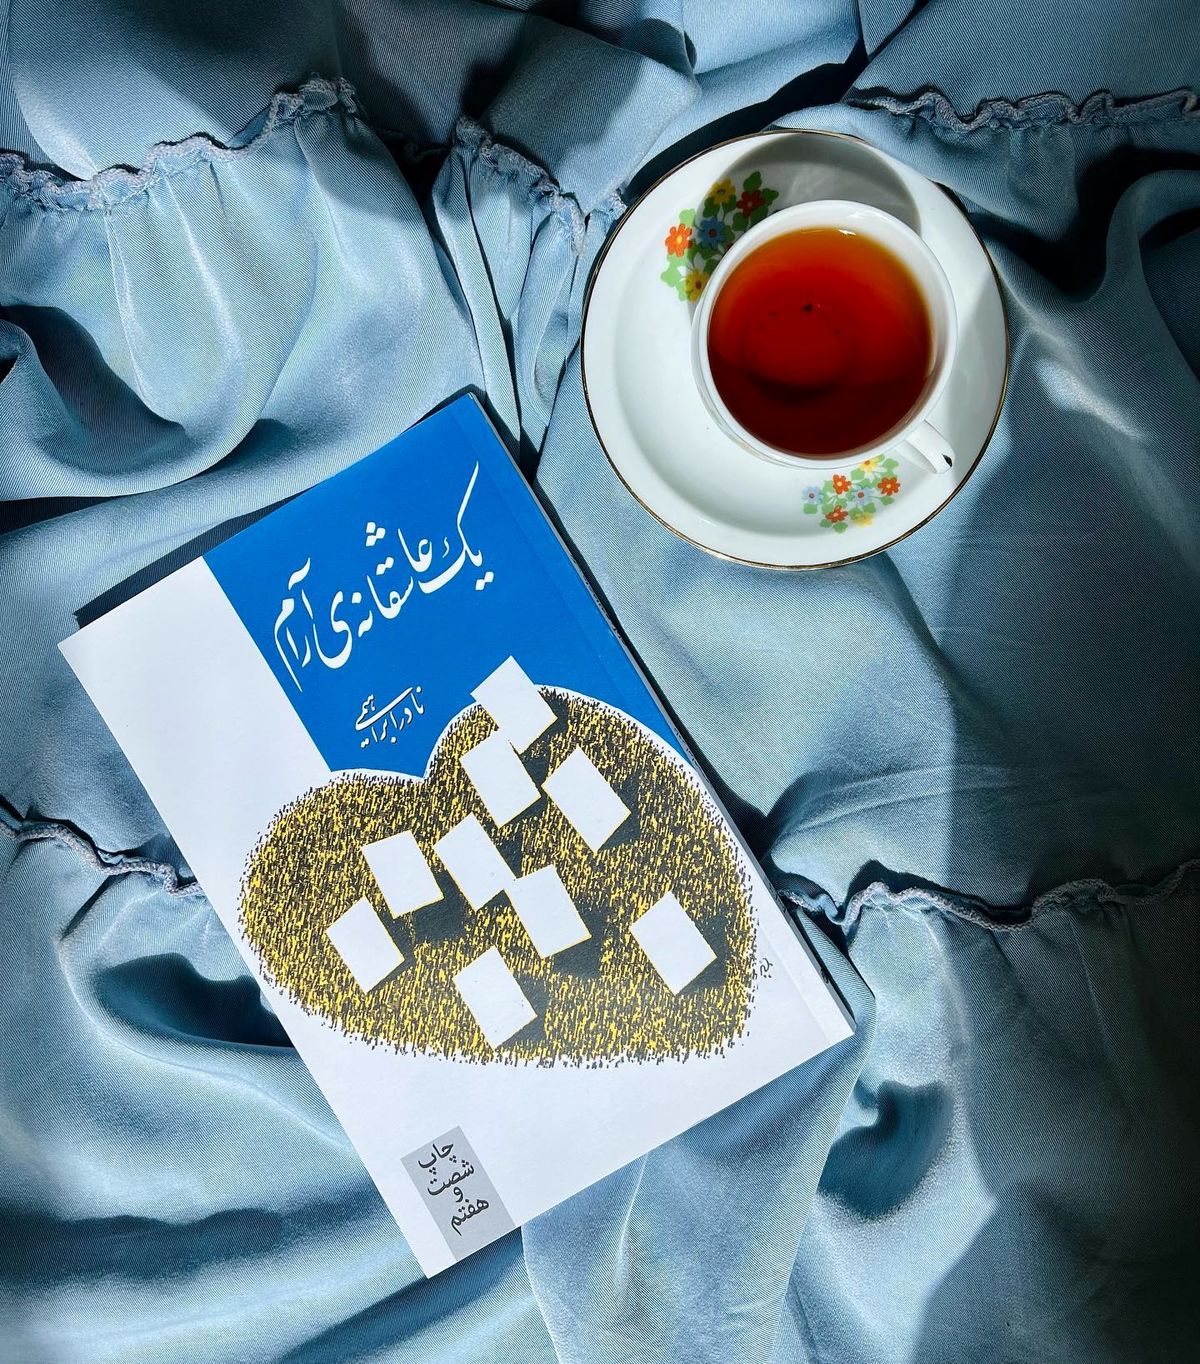 رمان های عاشقانه ایرانی